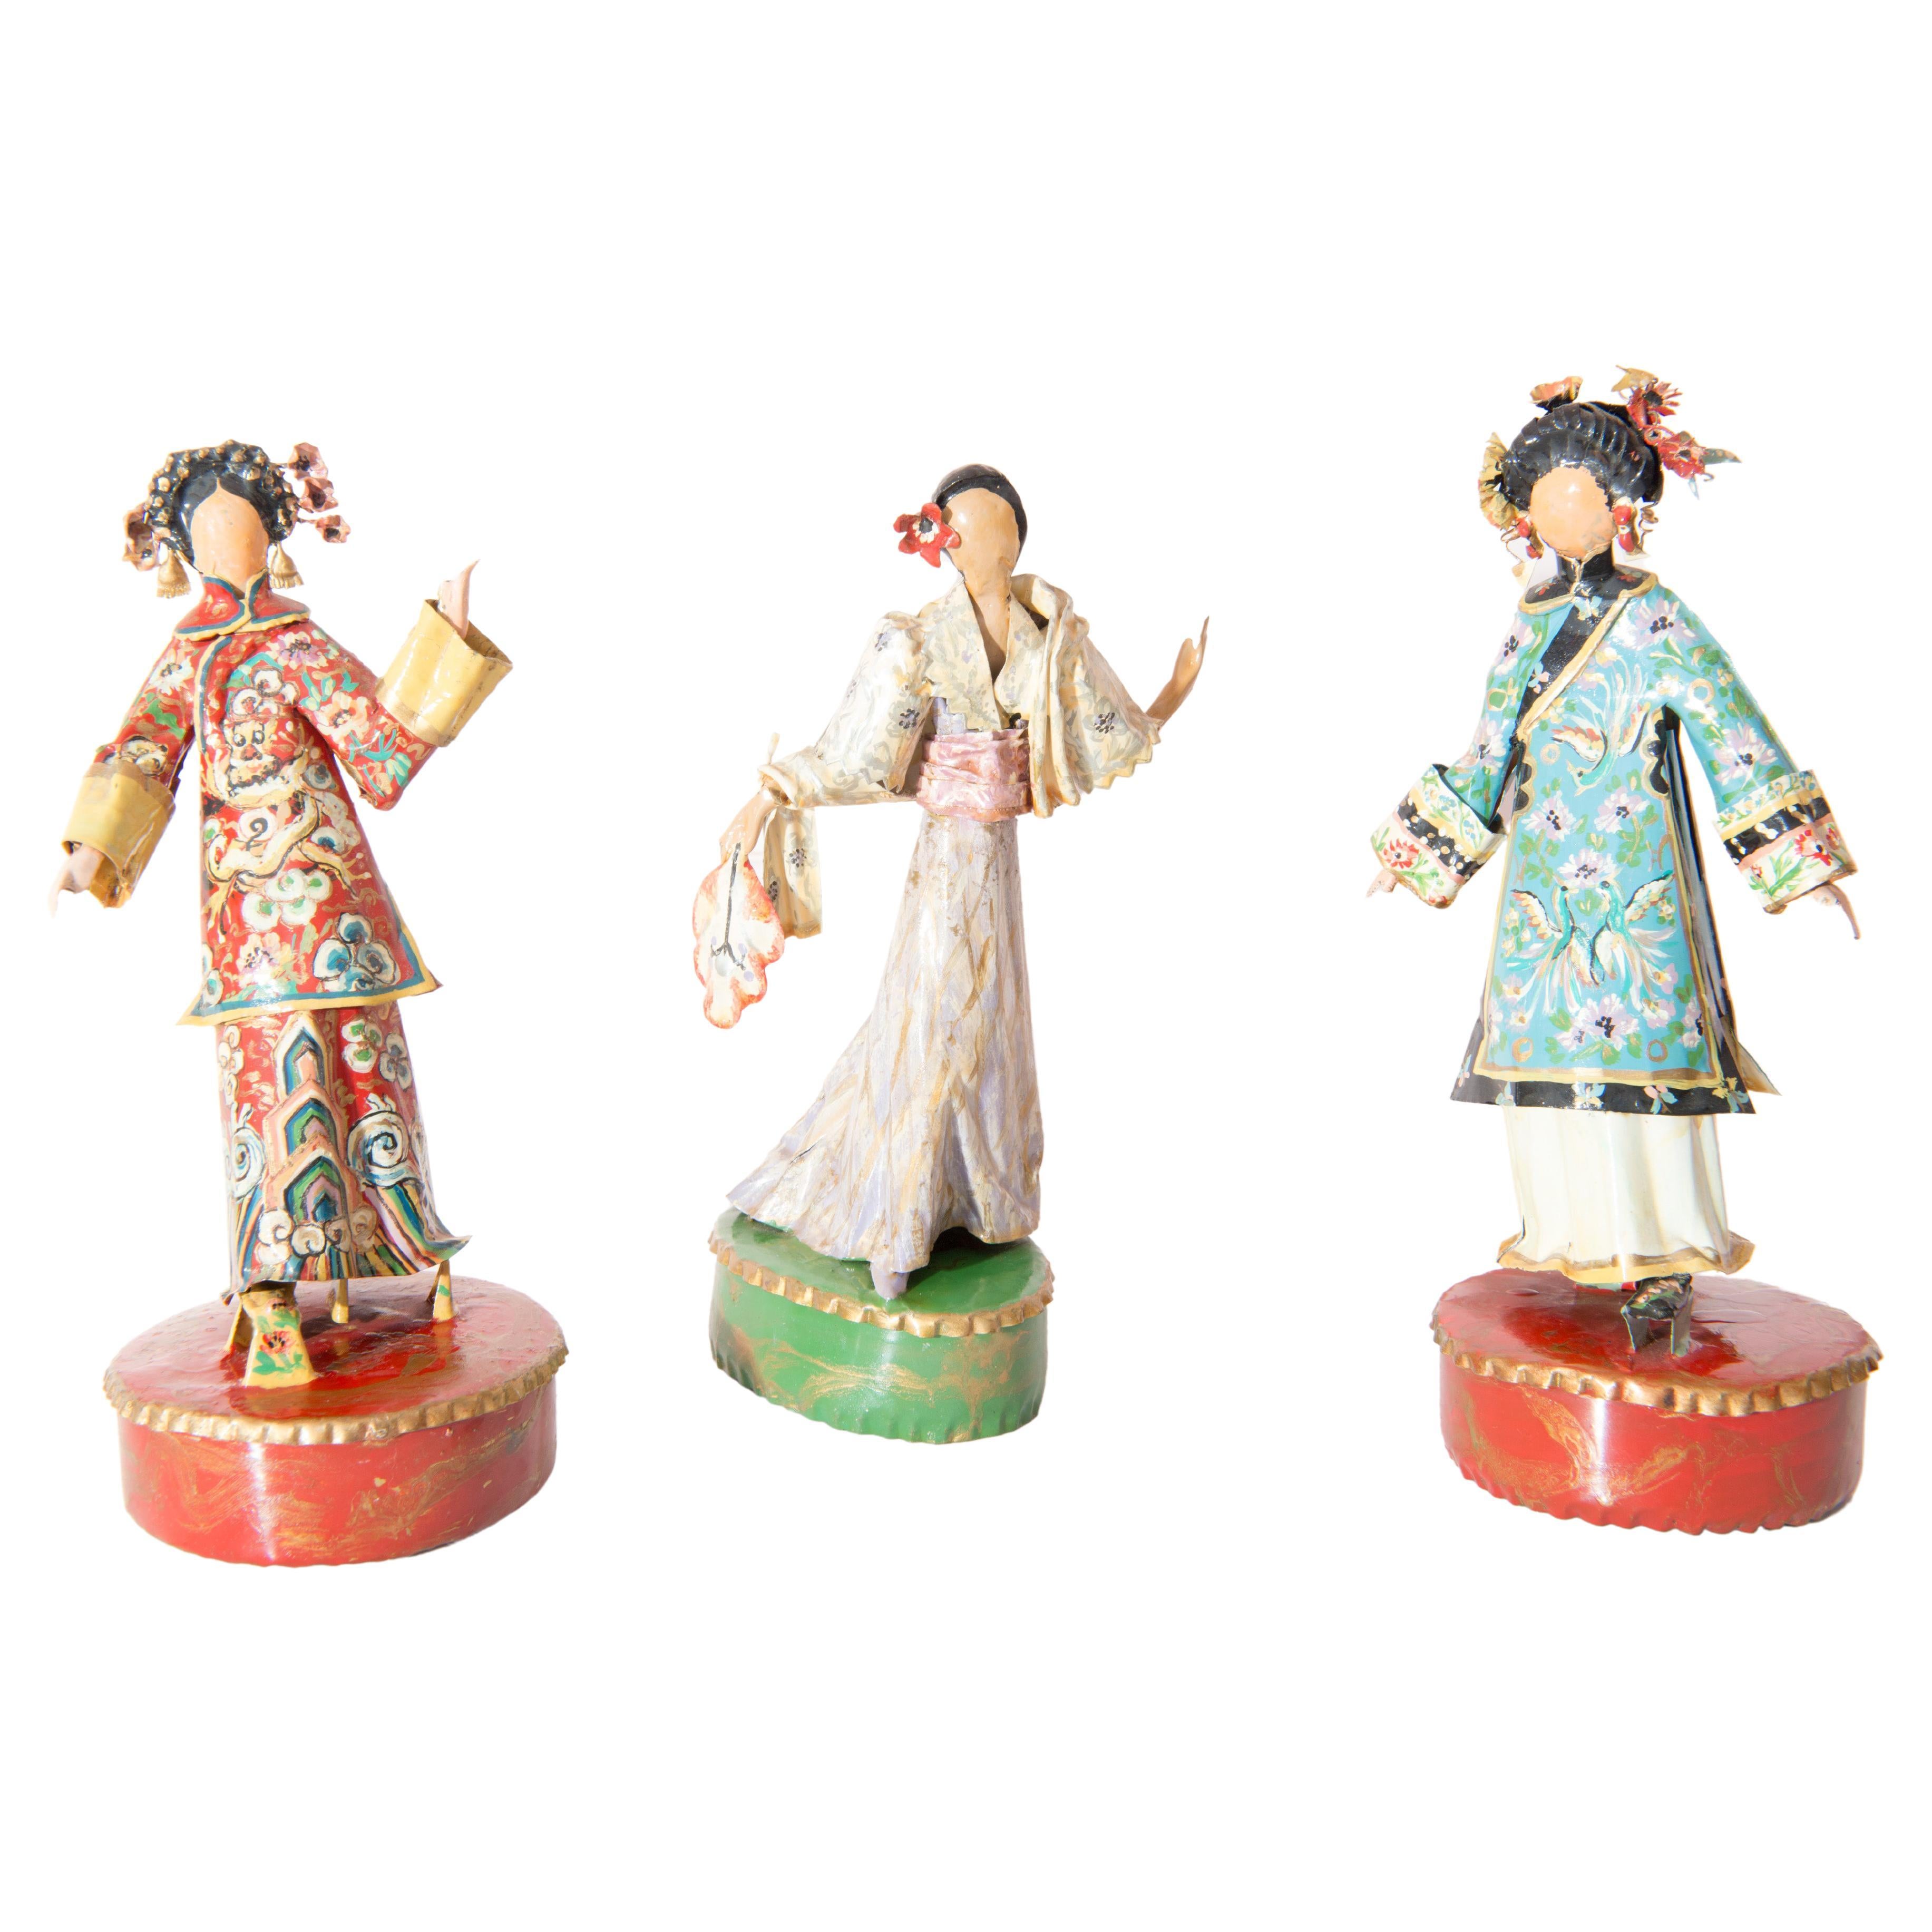 Trio de sculptures asiatiques de femmes en costume par Lee Menichetti